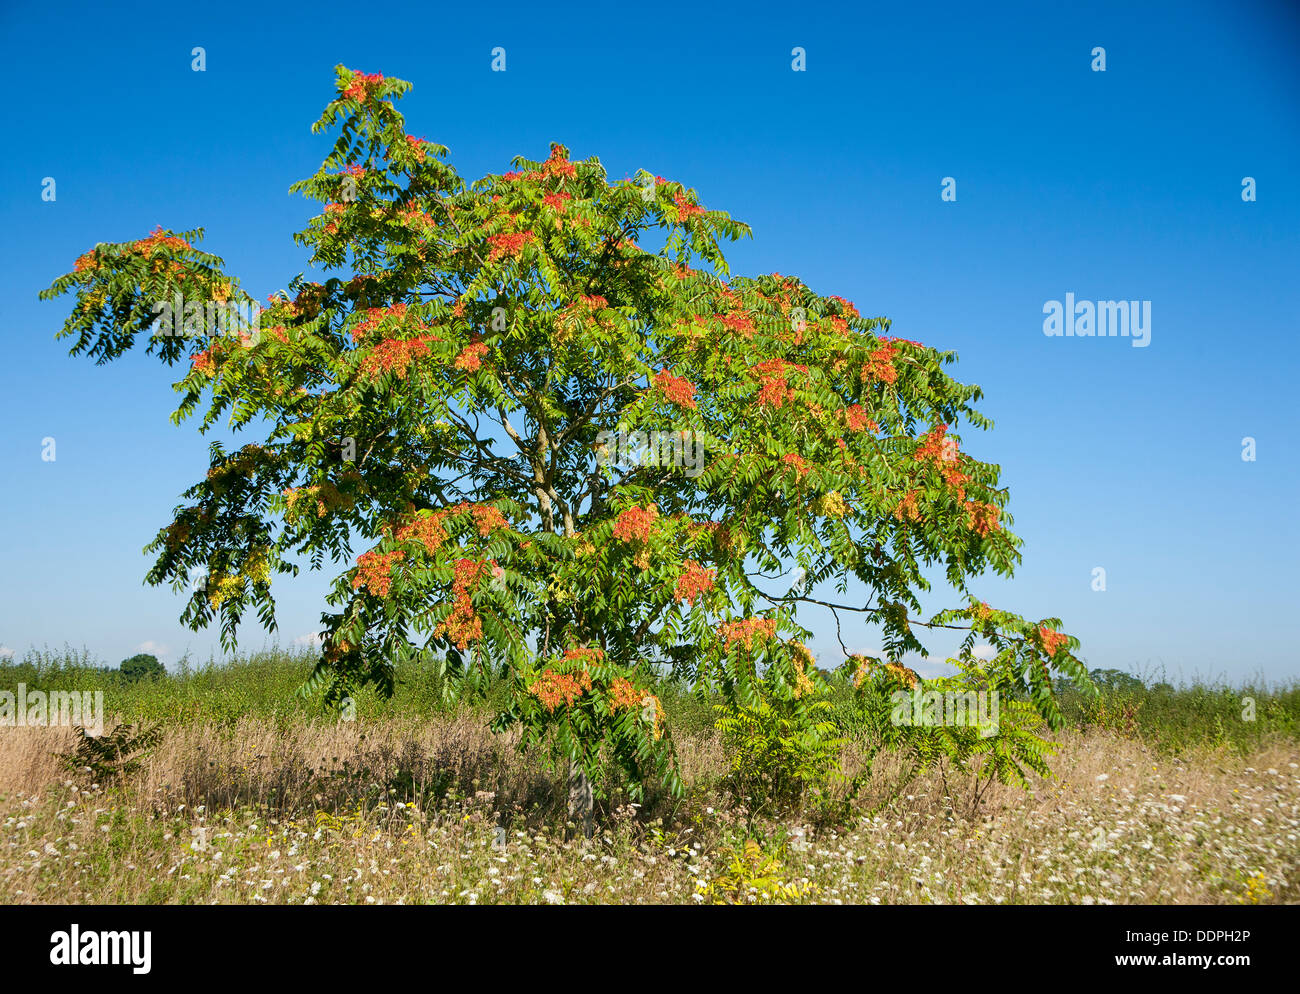 Rhus tree in field. Stock Photo